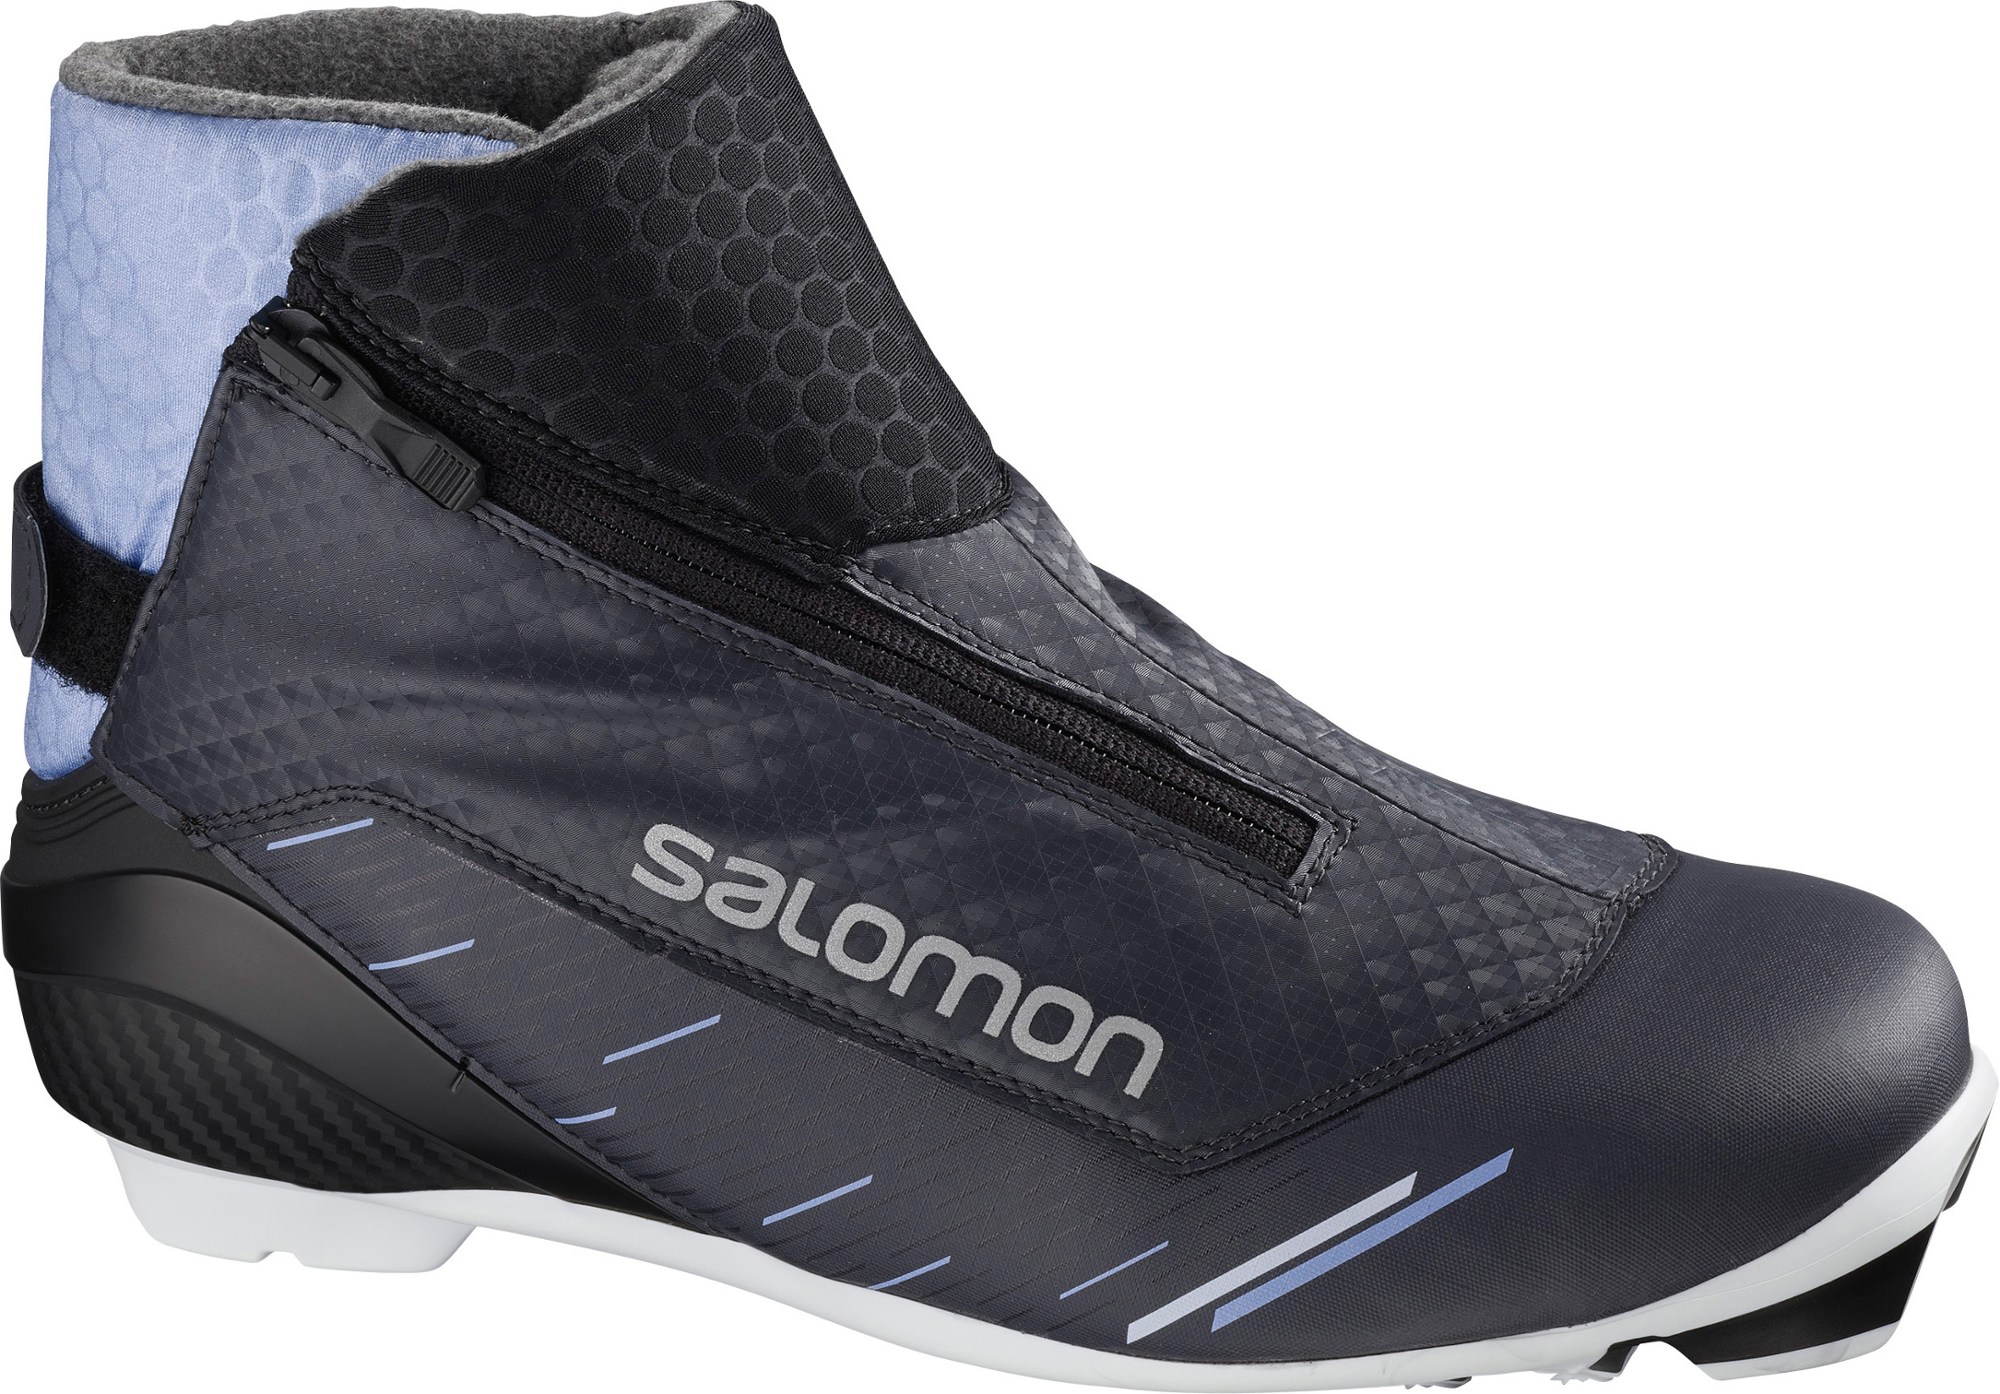 крепления для беговых лыж salomon prolink race skate черный Ботинки для беговых лыж RC9 Vitane Prolink — женские Salomon